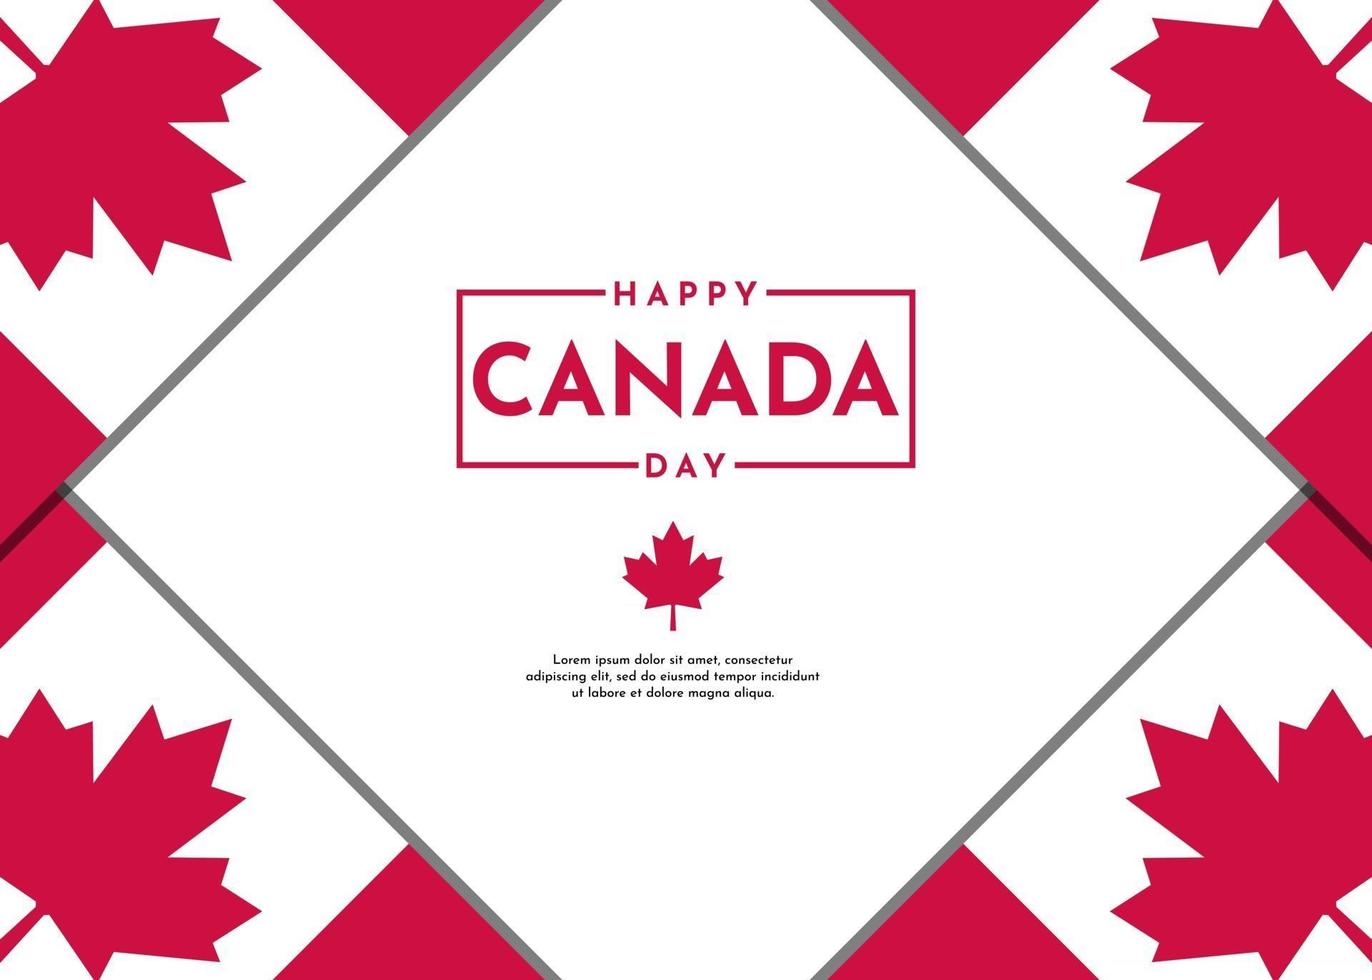 fundo de celebração do dia do Canadá com design de folha de bordo vetor